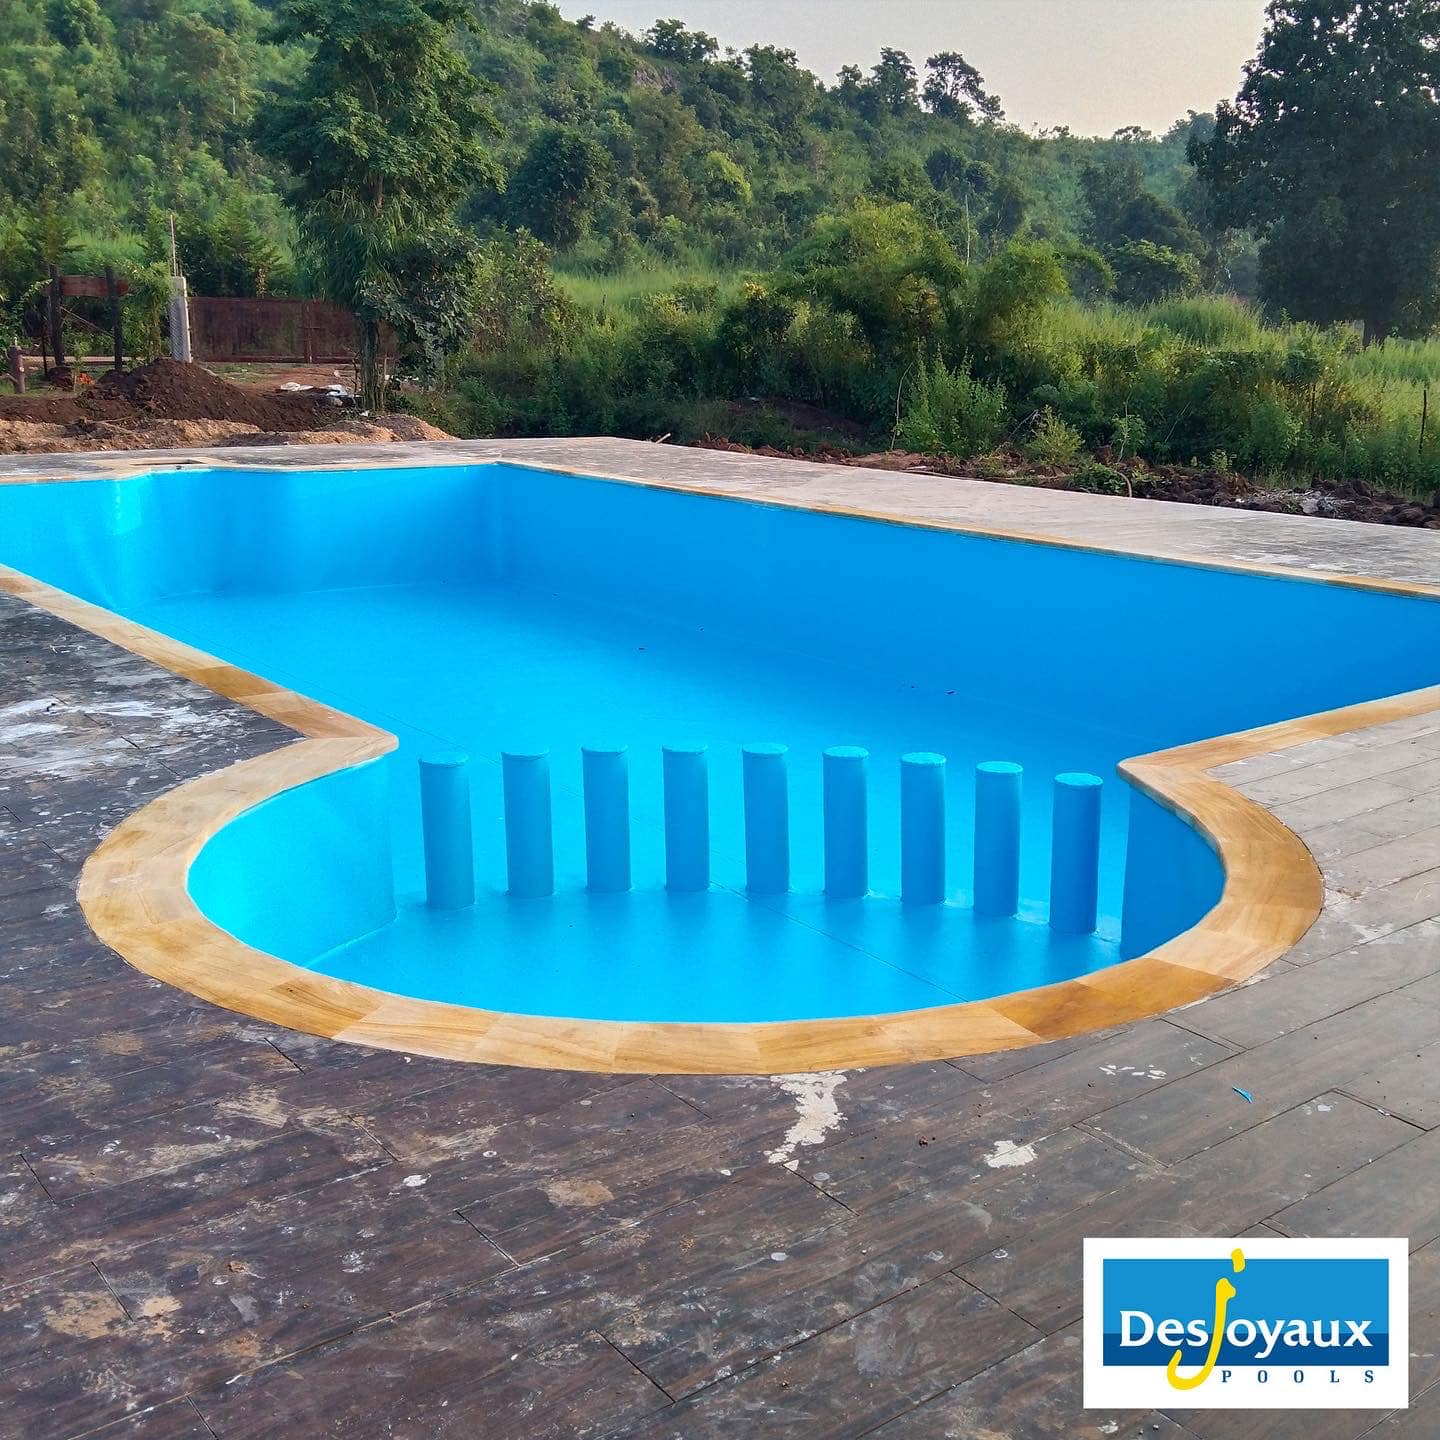 Desjoyaux Pools India Pvt. Ltd.